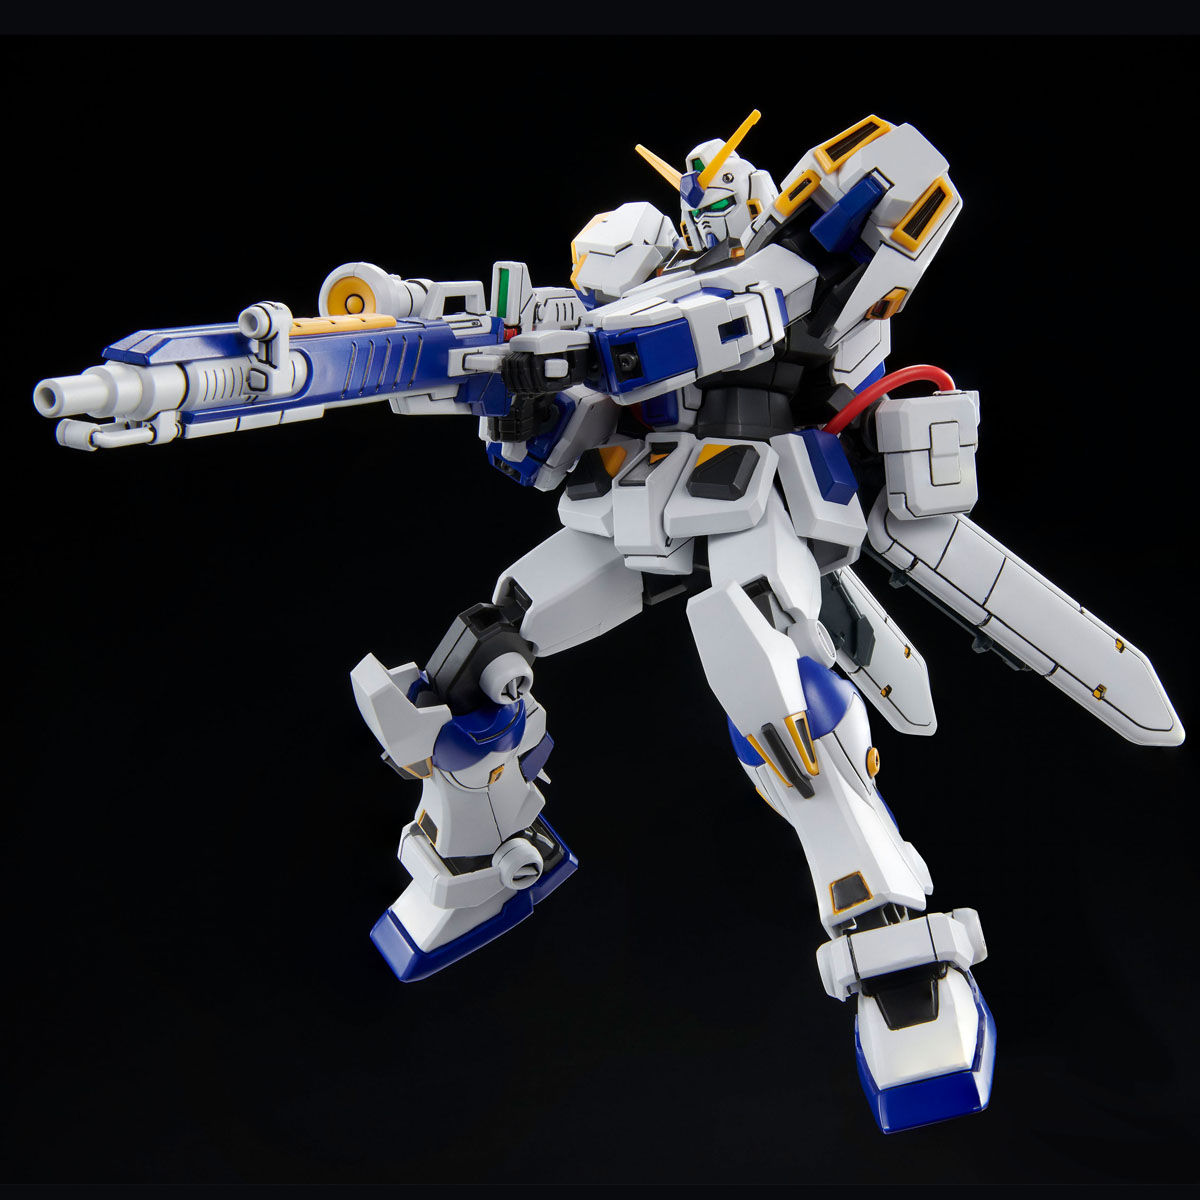 HGUC 1/144 RX-78-4[Bst] Gundam 4th Bst